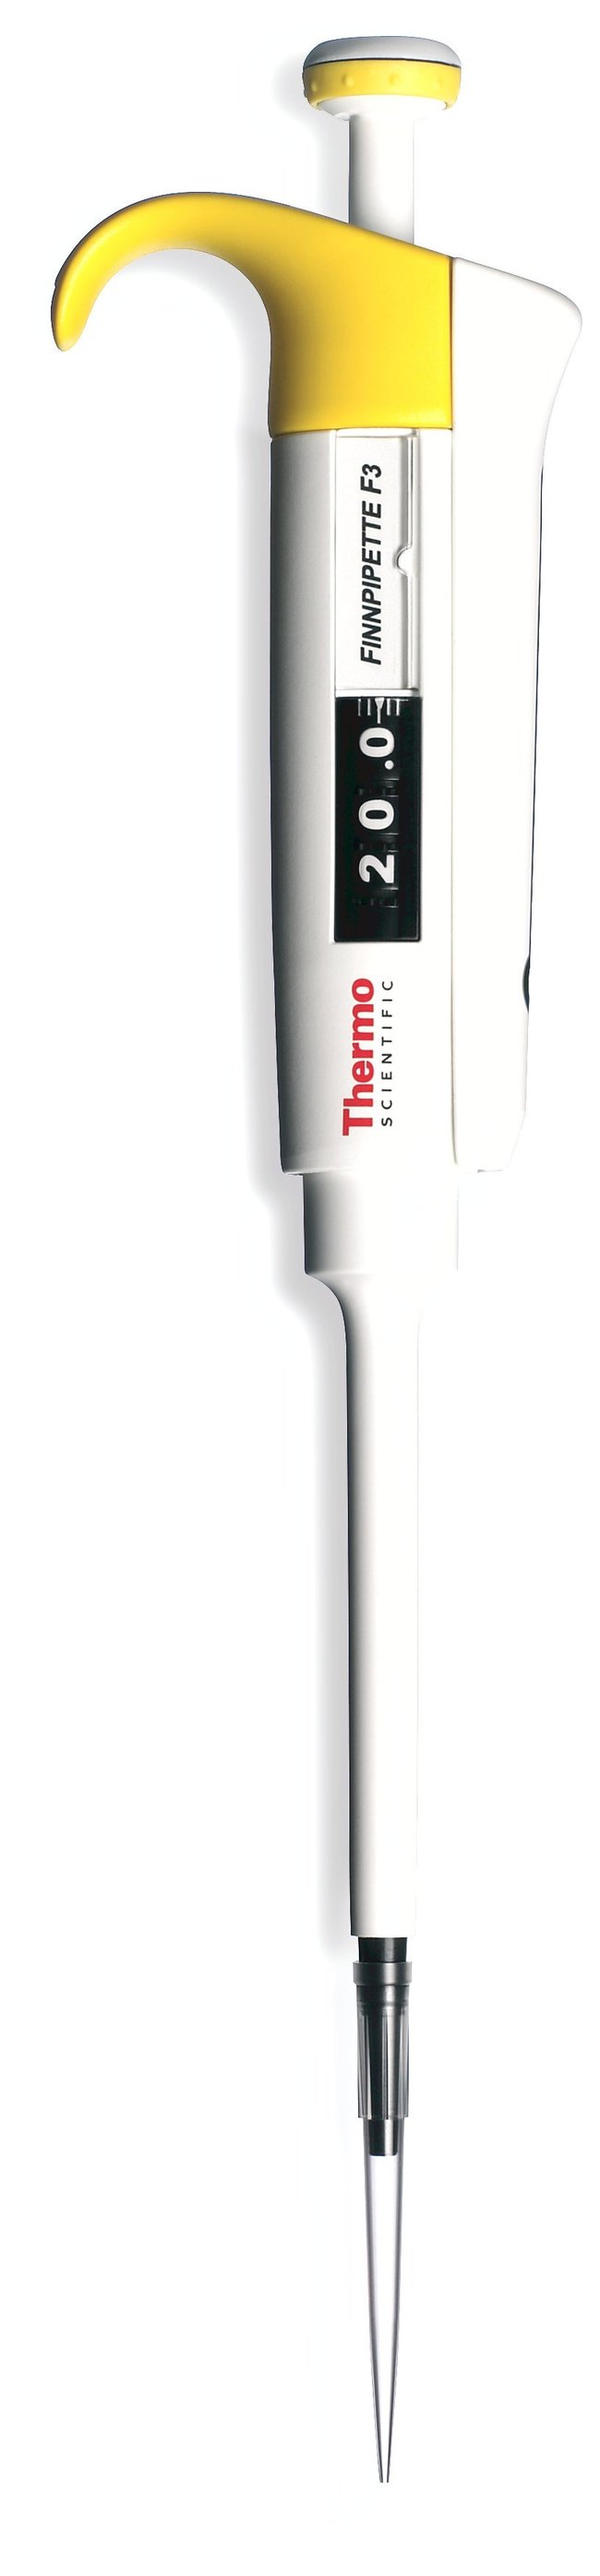 赛默飞世尔-Thermo Finnpipette F3可调单道移液器-移液器